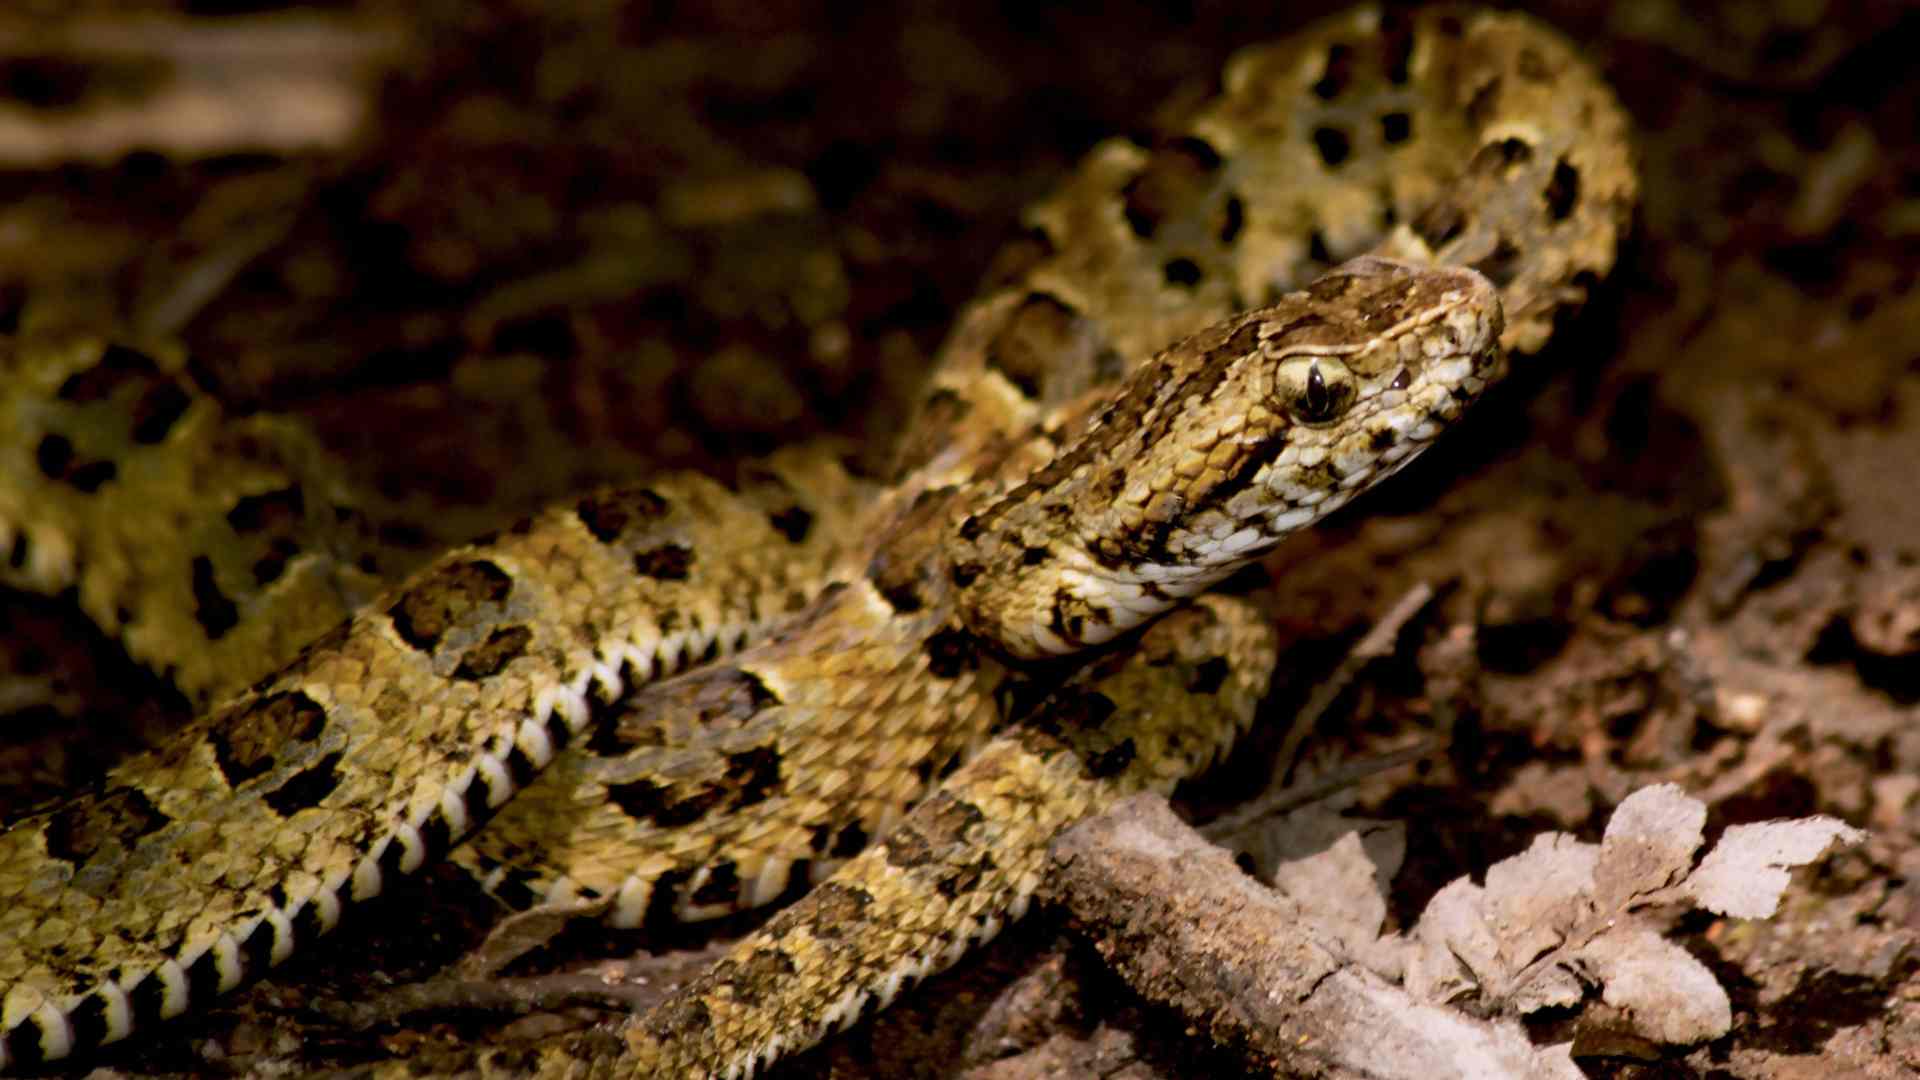 Descubierta una nueva especie de serpiente venenosa en Perú